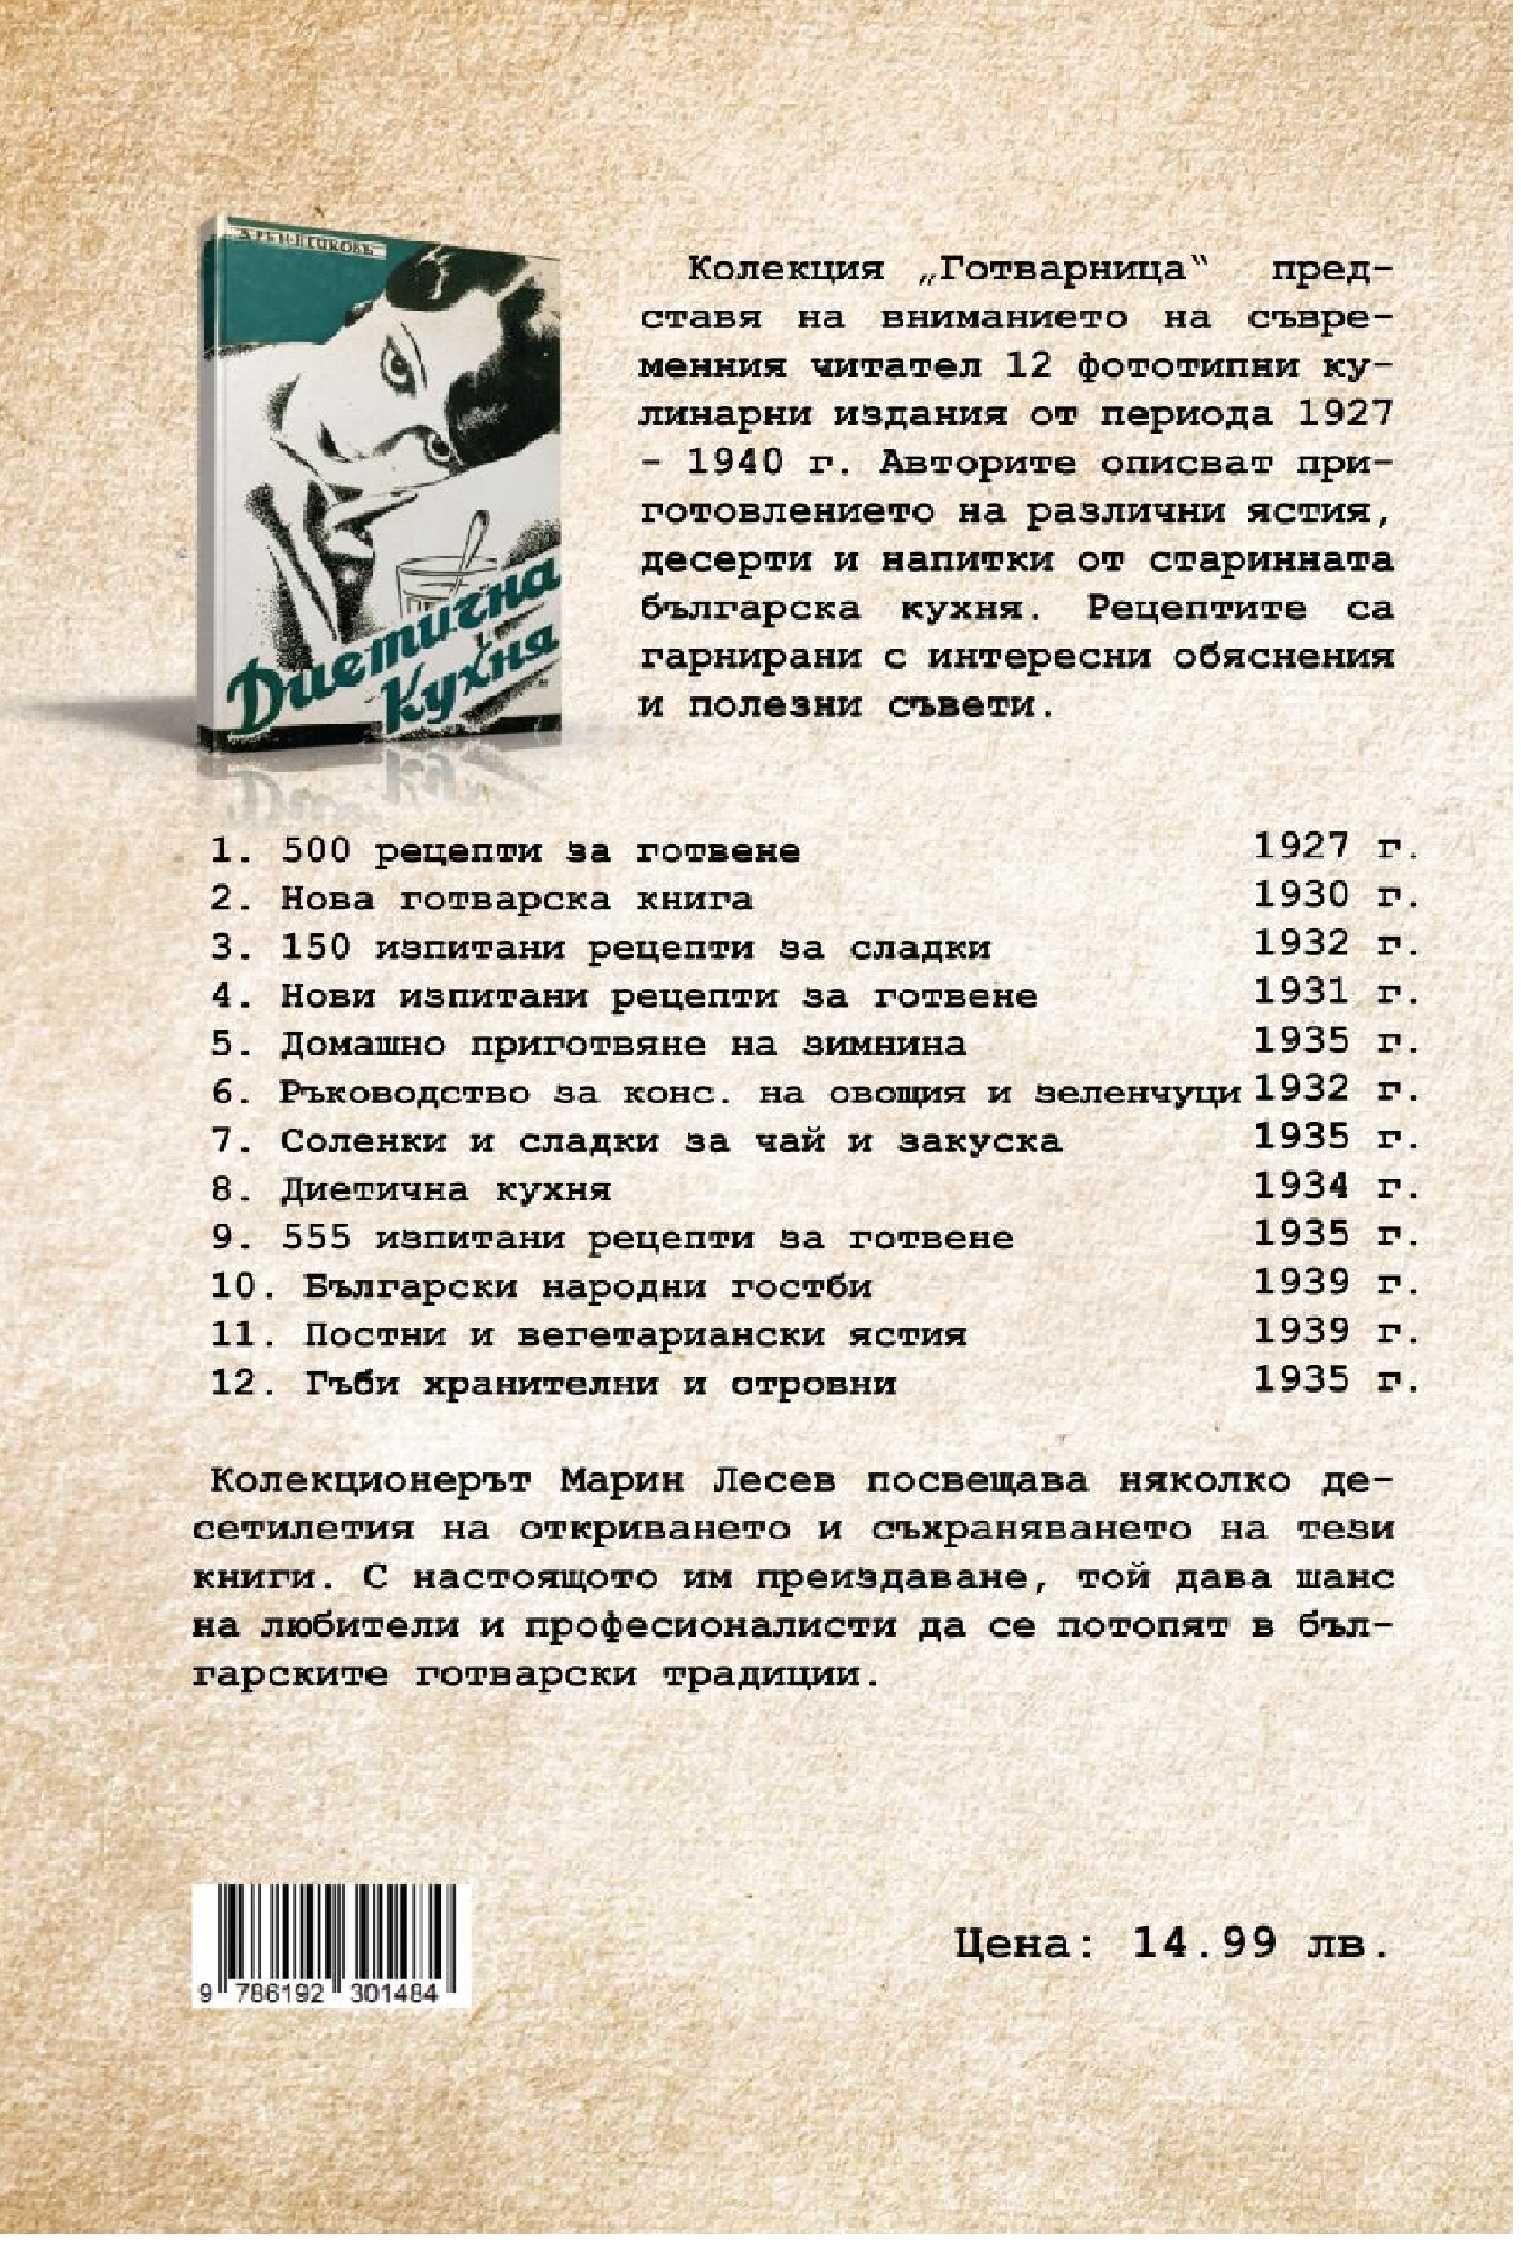 Соленки и сладки за чай и закуска - 1935 г.